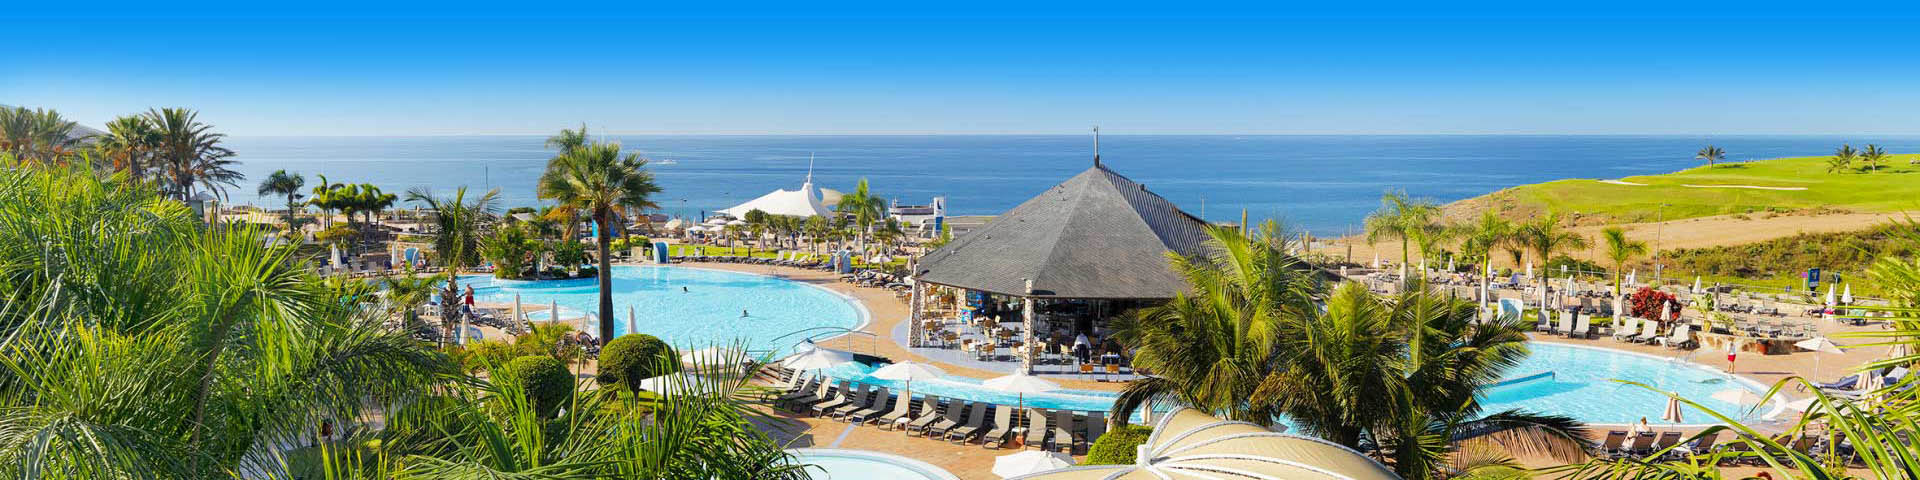 All Inclusive resort aan het strand met zwembad en palmbomen op Gran Canaria